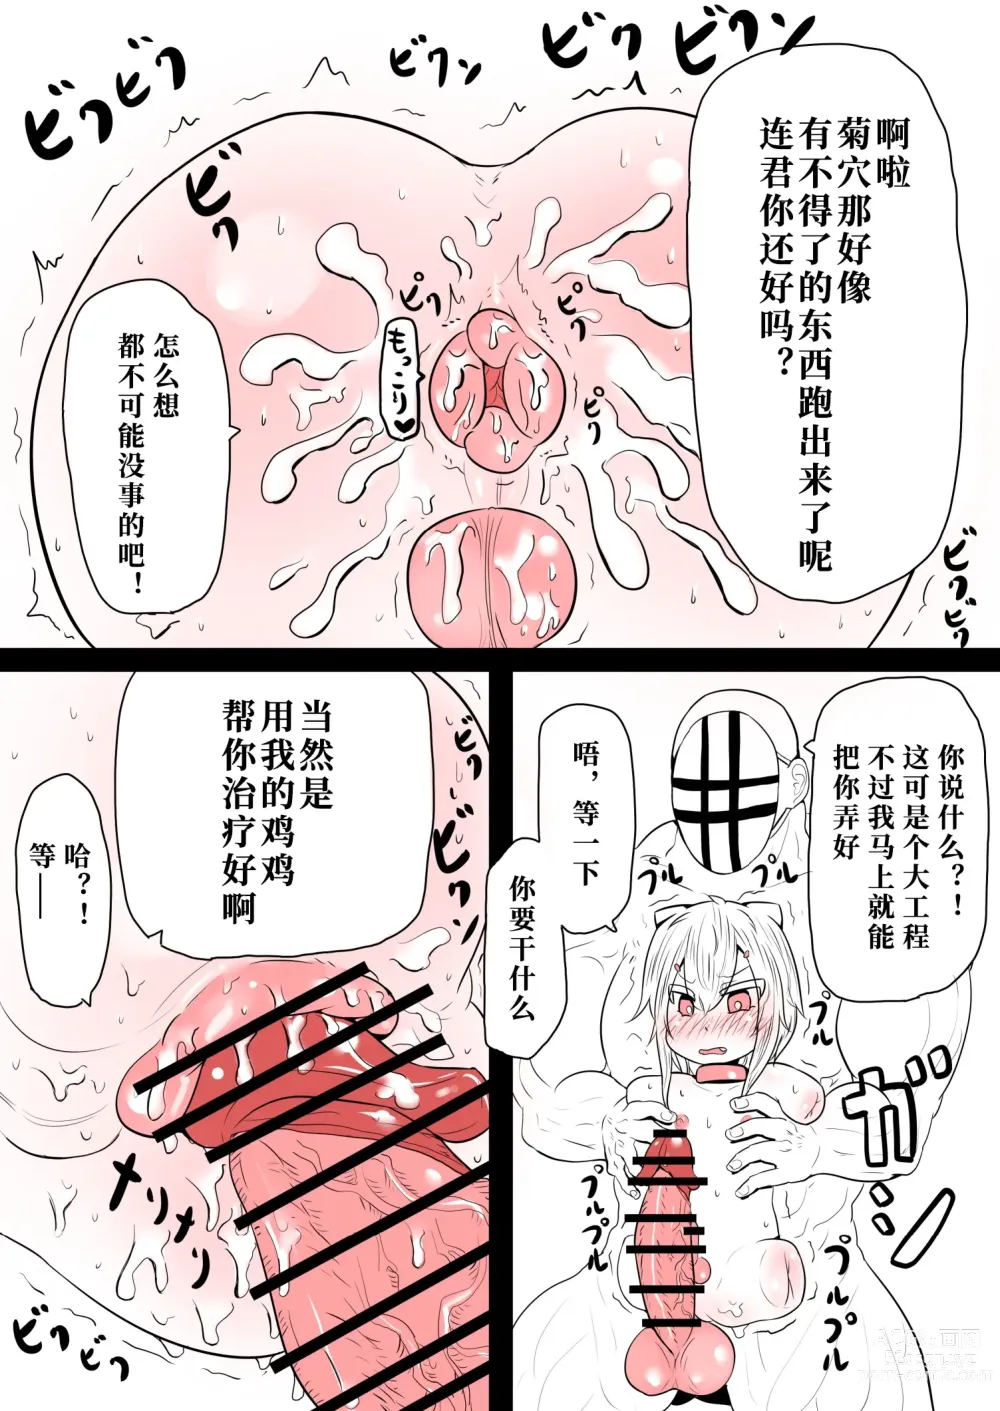 Page 5 of doujinshi Ren-kun wa Zettai ni Kusshinai